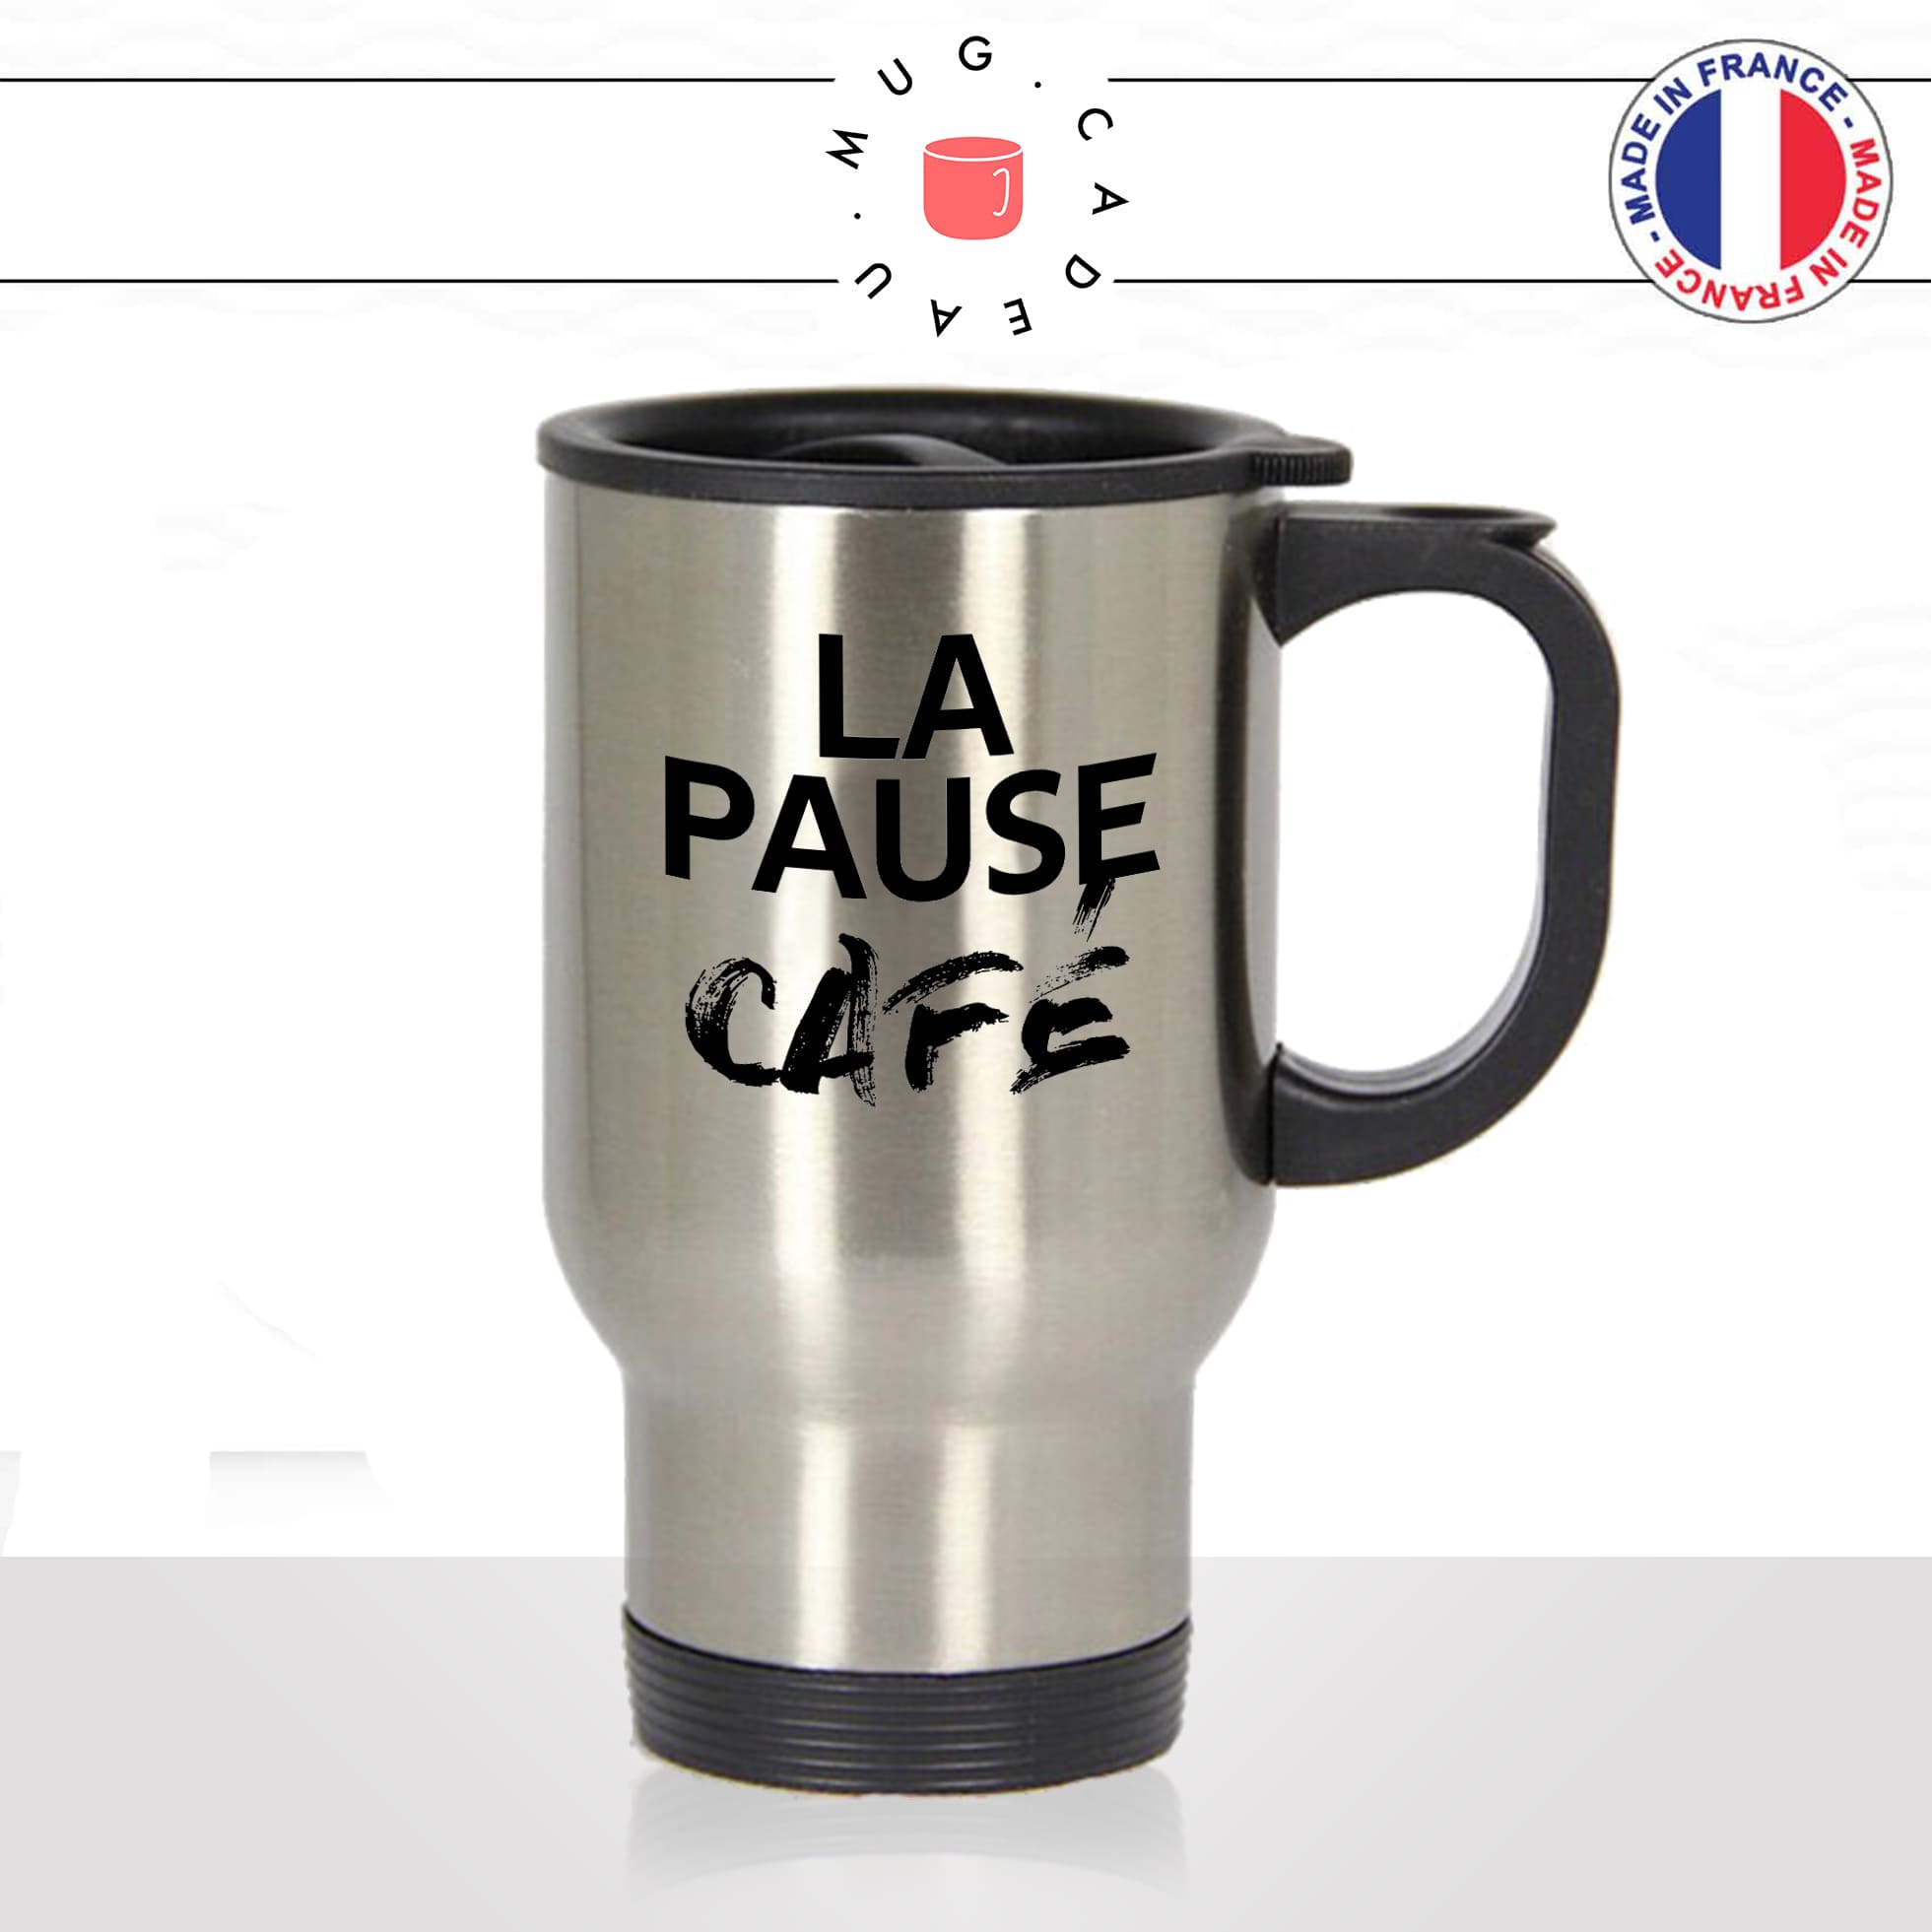 mug-tasse-thermos-isotherme-voyage-la-pause-café-thé-collegue-travail-boulot-homme-femme-accro-humour-fun-idée-cadeau-originale-cool2